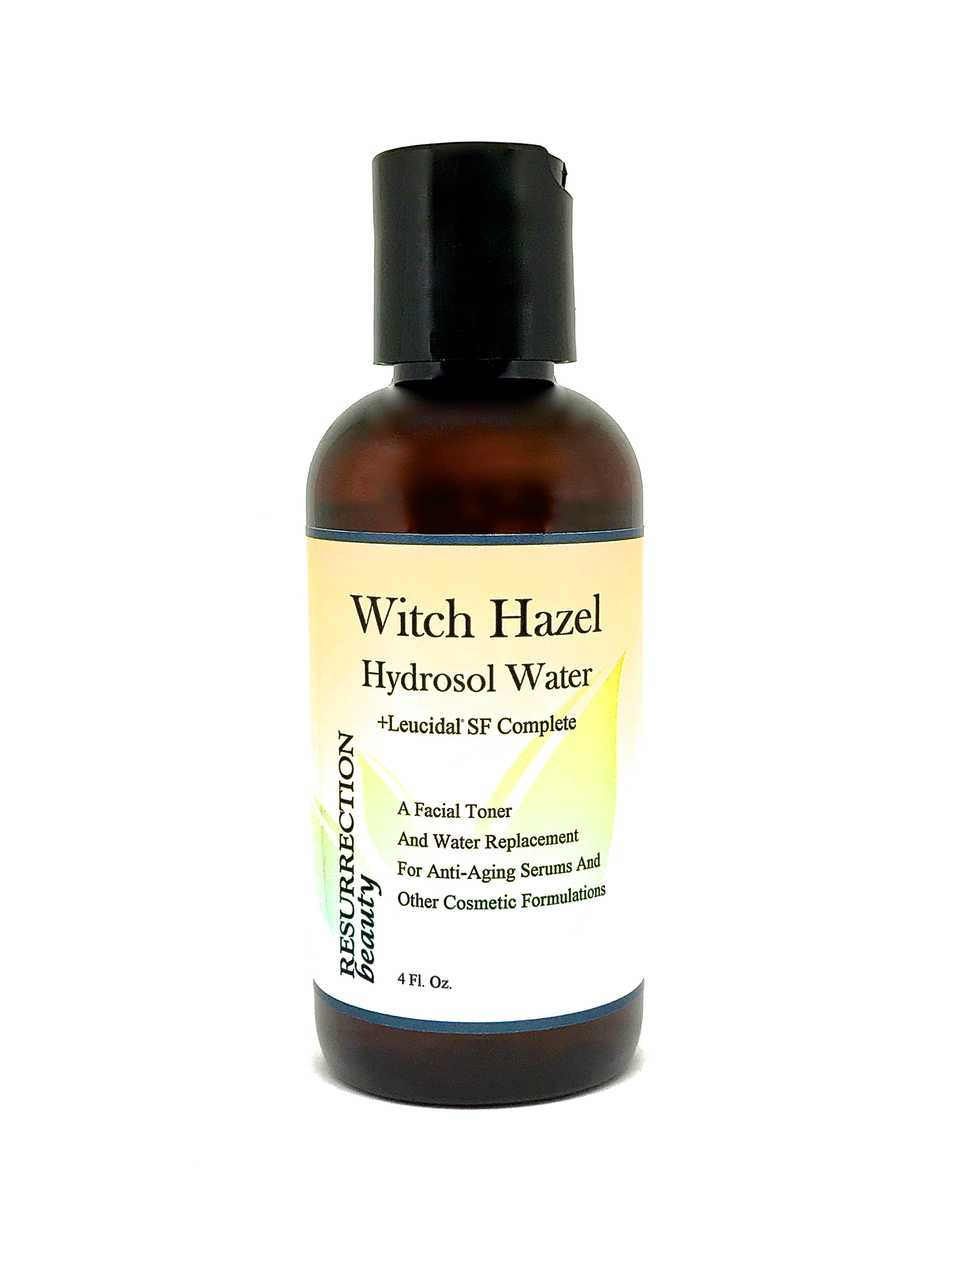 Witch Hazel Hydrosol Water with Leucidal, Toner & Serum Additive, 4oz.